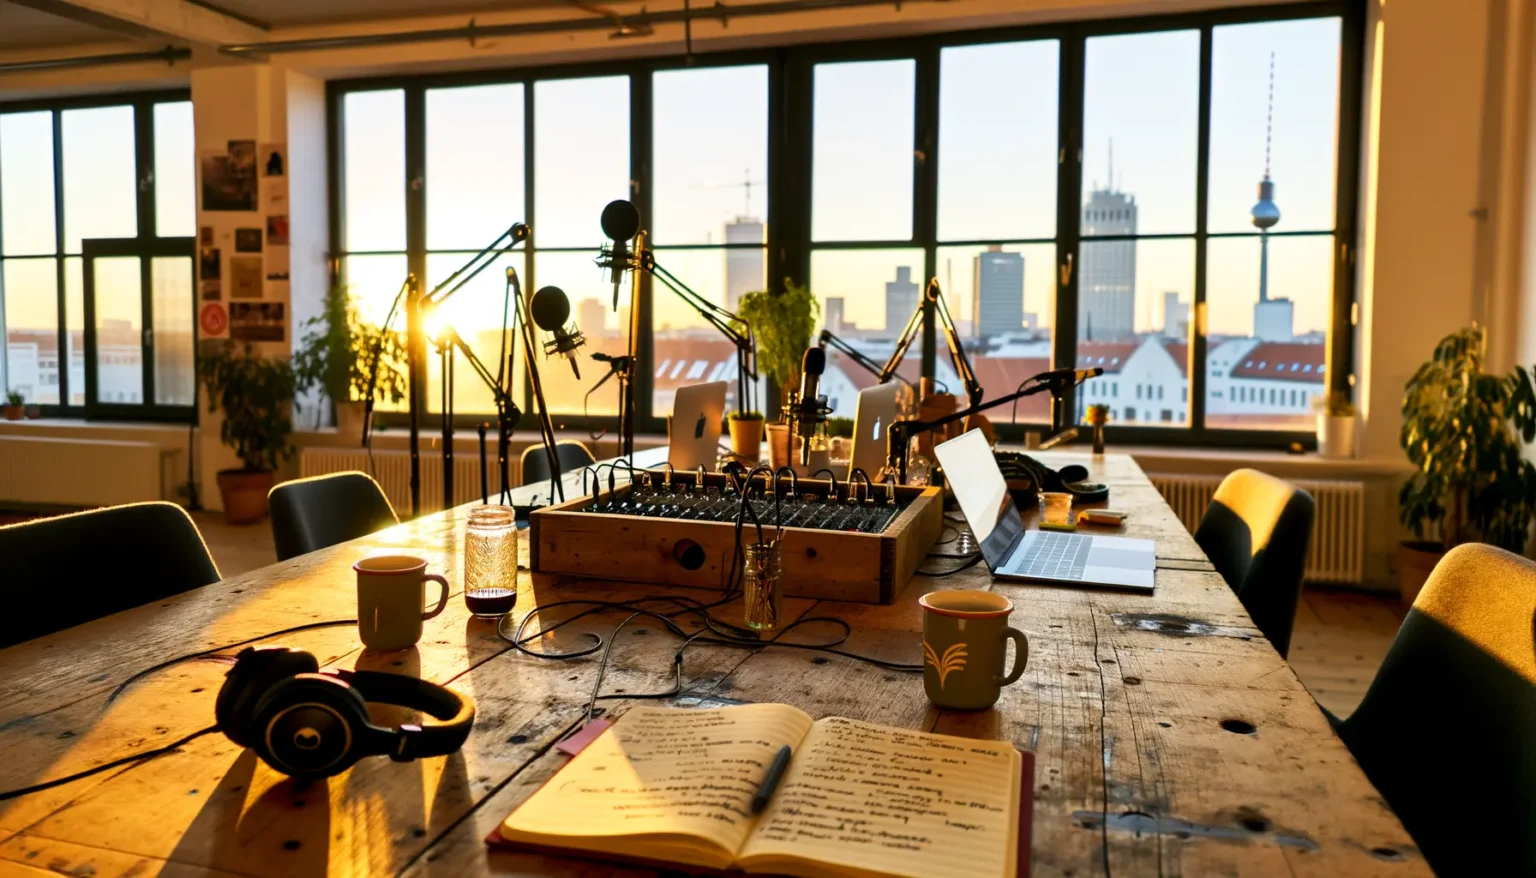 Ein Podcast-Studio bei Sonnenuntergang mit verschiedenen Mikrofonen, einem Mischpult und Kopfhörern auf einem Holztisch; im Hintergrund sind durch große Fenster die Silhouette einer Stadt mit einem markanten Fernsehturm zu erkennen.